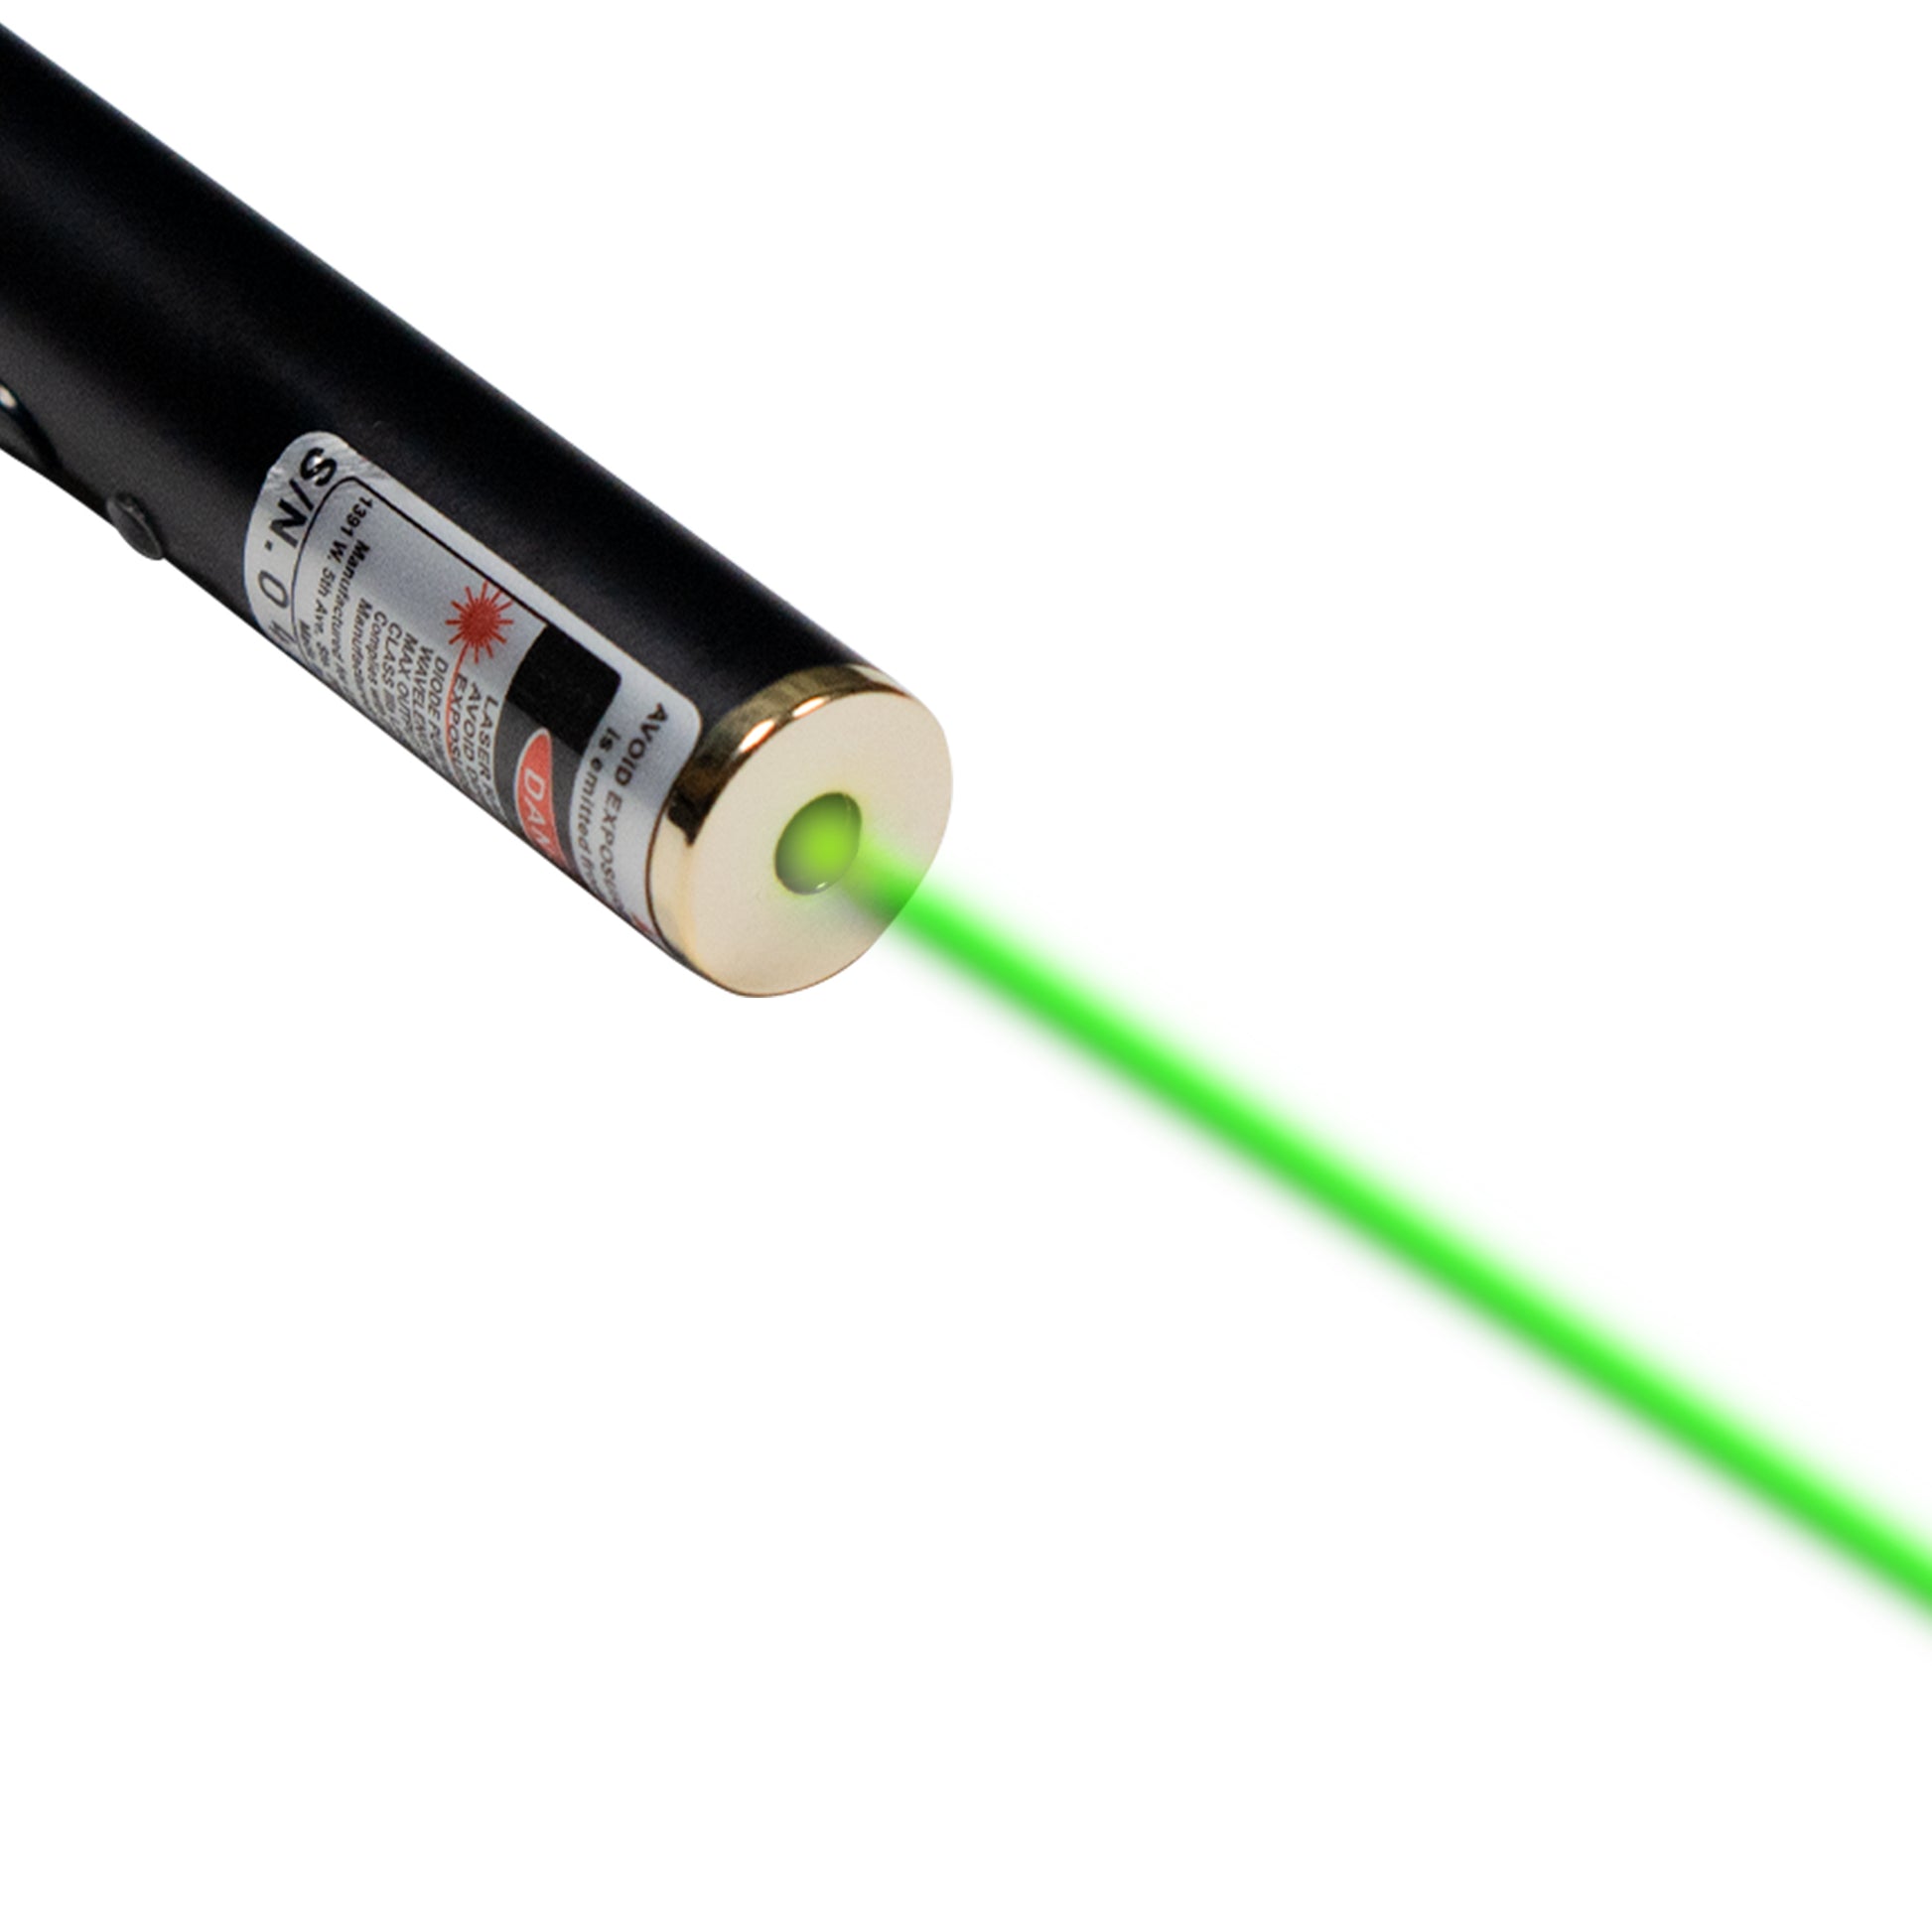 https://laserclassroom.com/cdn/shop/files/532nm-green-laser-pointer-1mW.jpg?v=1706061977&width=1946